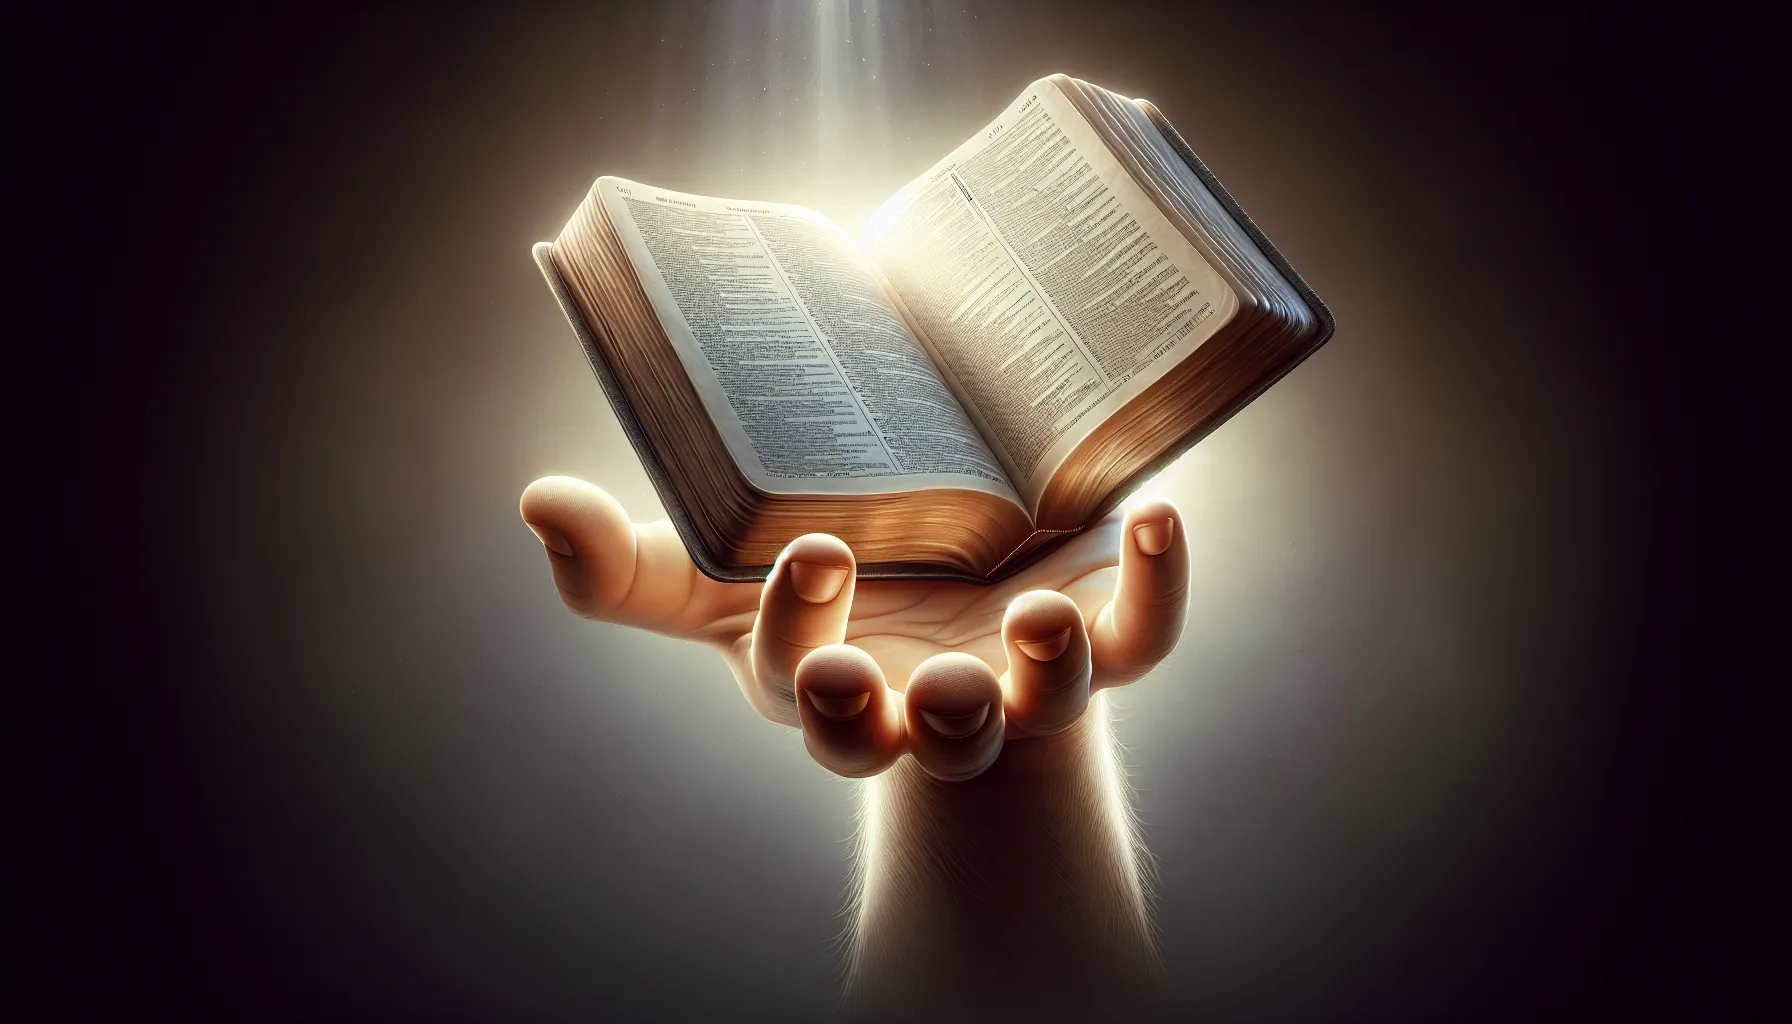 Imagen de una mano extendida con una biblia abierta, simbolizando el perdón según la enseñanza bíblica.